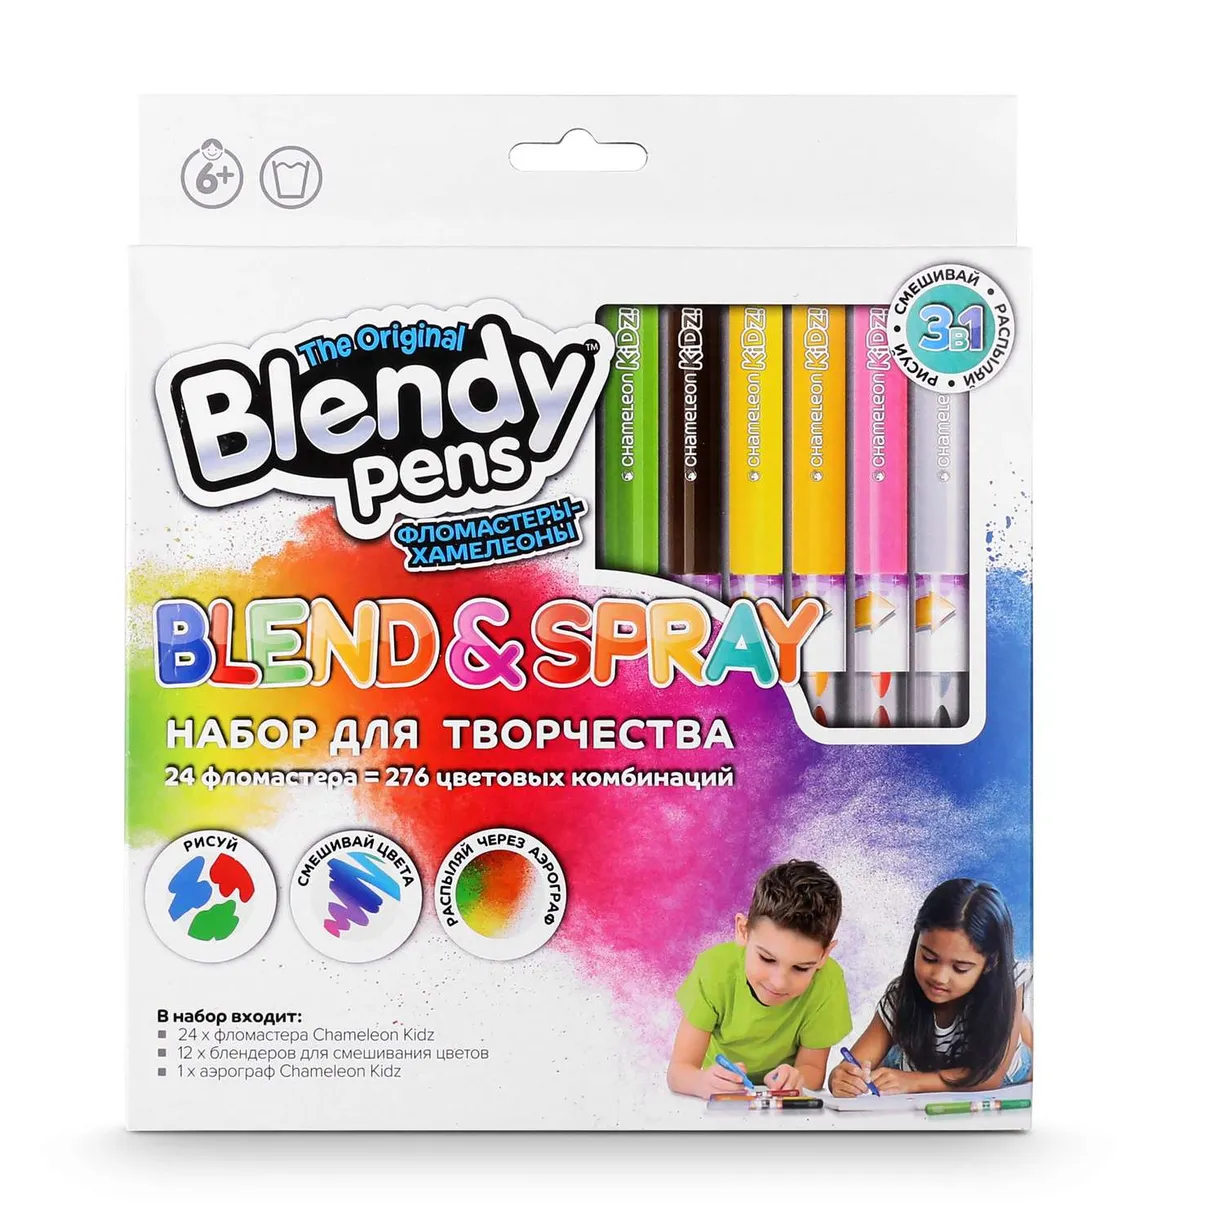 Набор фломастеров Blendy pens 24 шт набор фломастеров blendy pens 14 шт